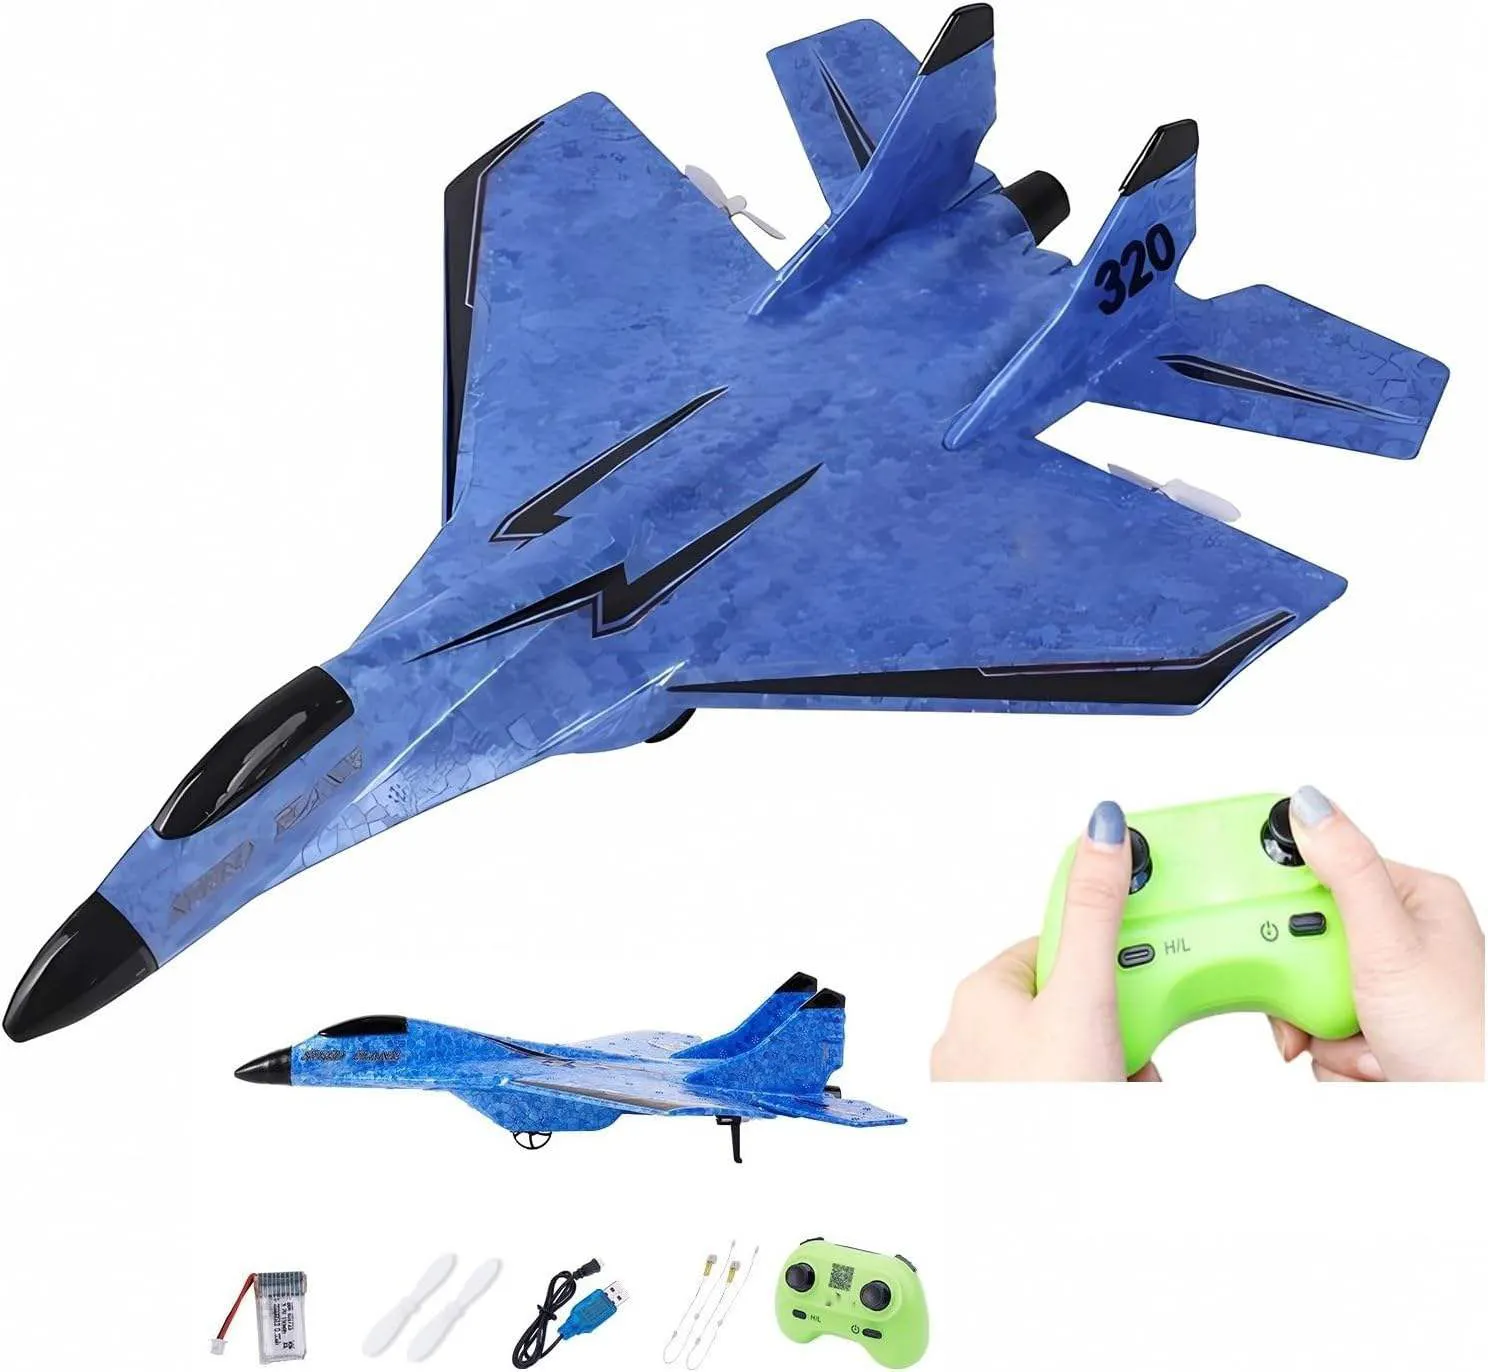 2.4Gリモコン飛行機おもちゃ屋外RCグライダー飛行機おもちゃシミュレーションRCグライダー飛行機モデルおもちゃ男の子用